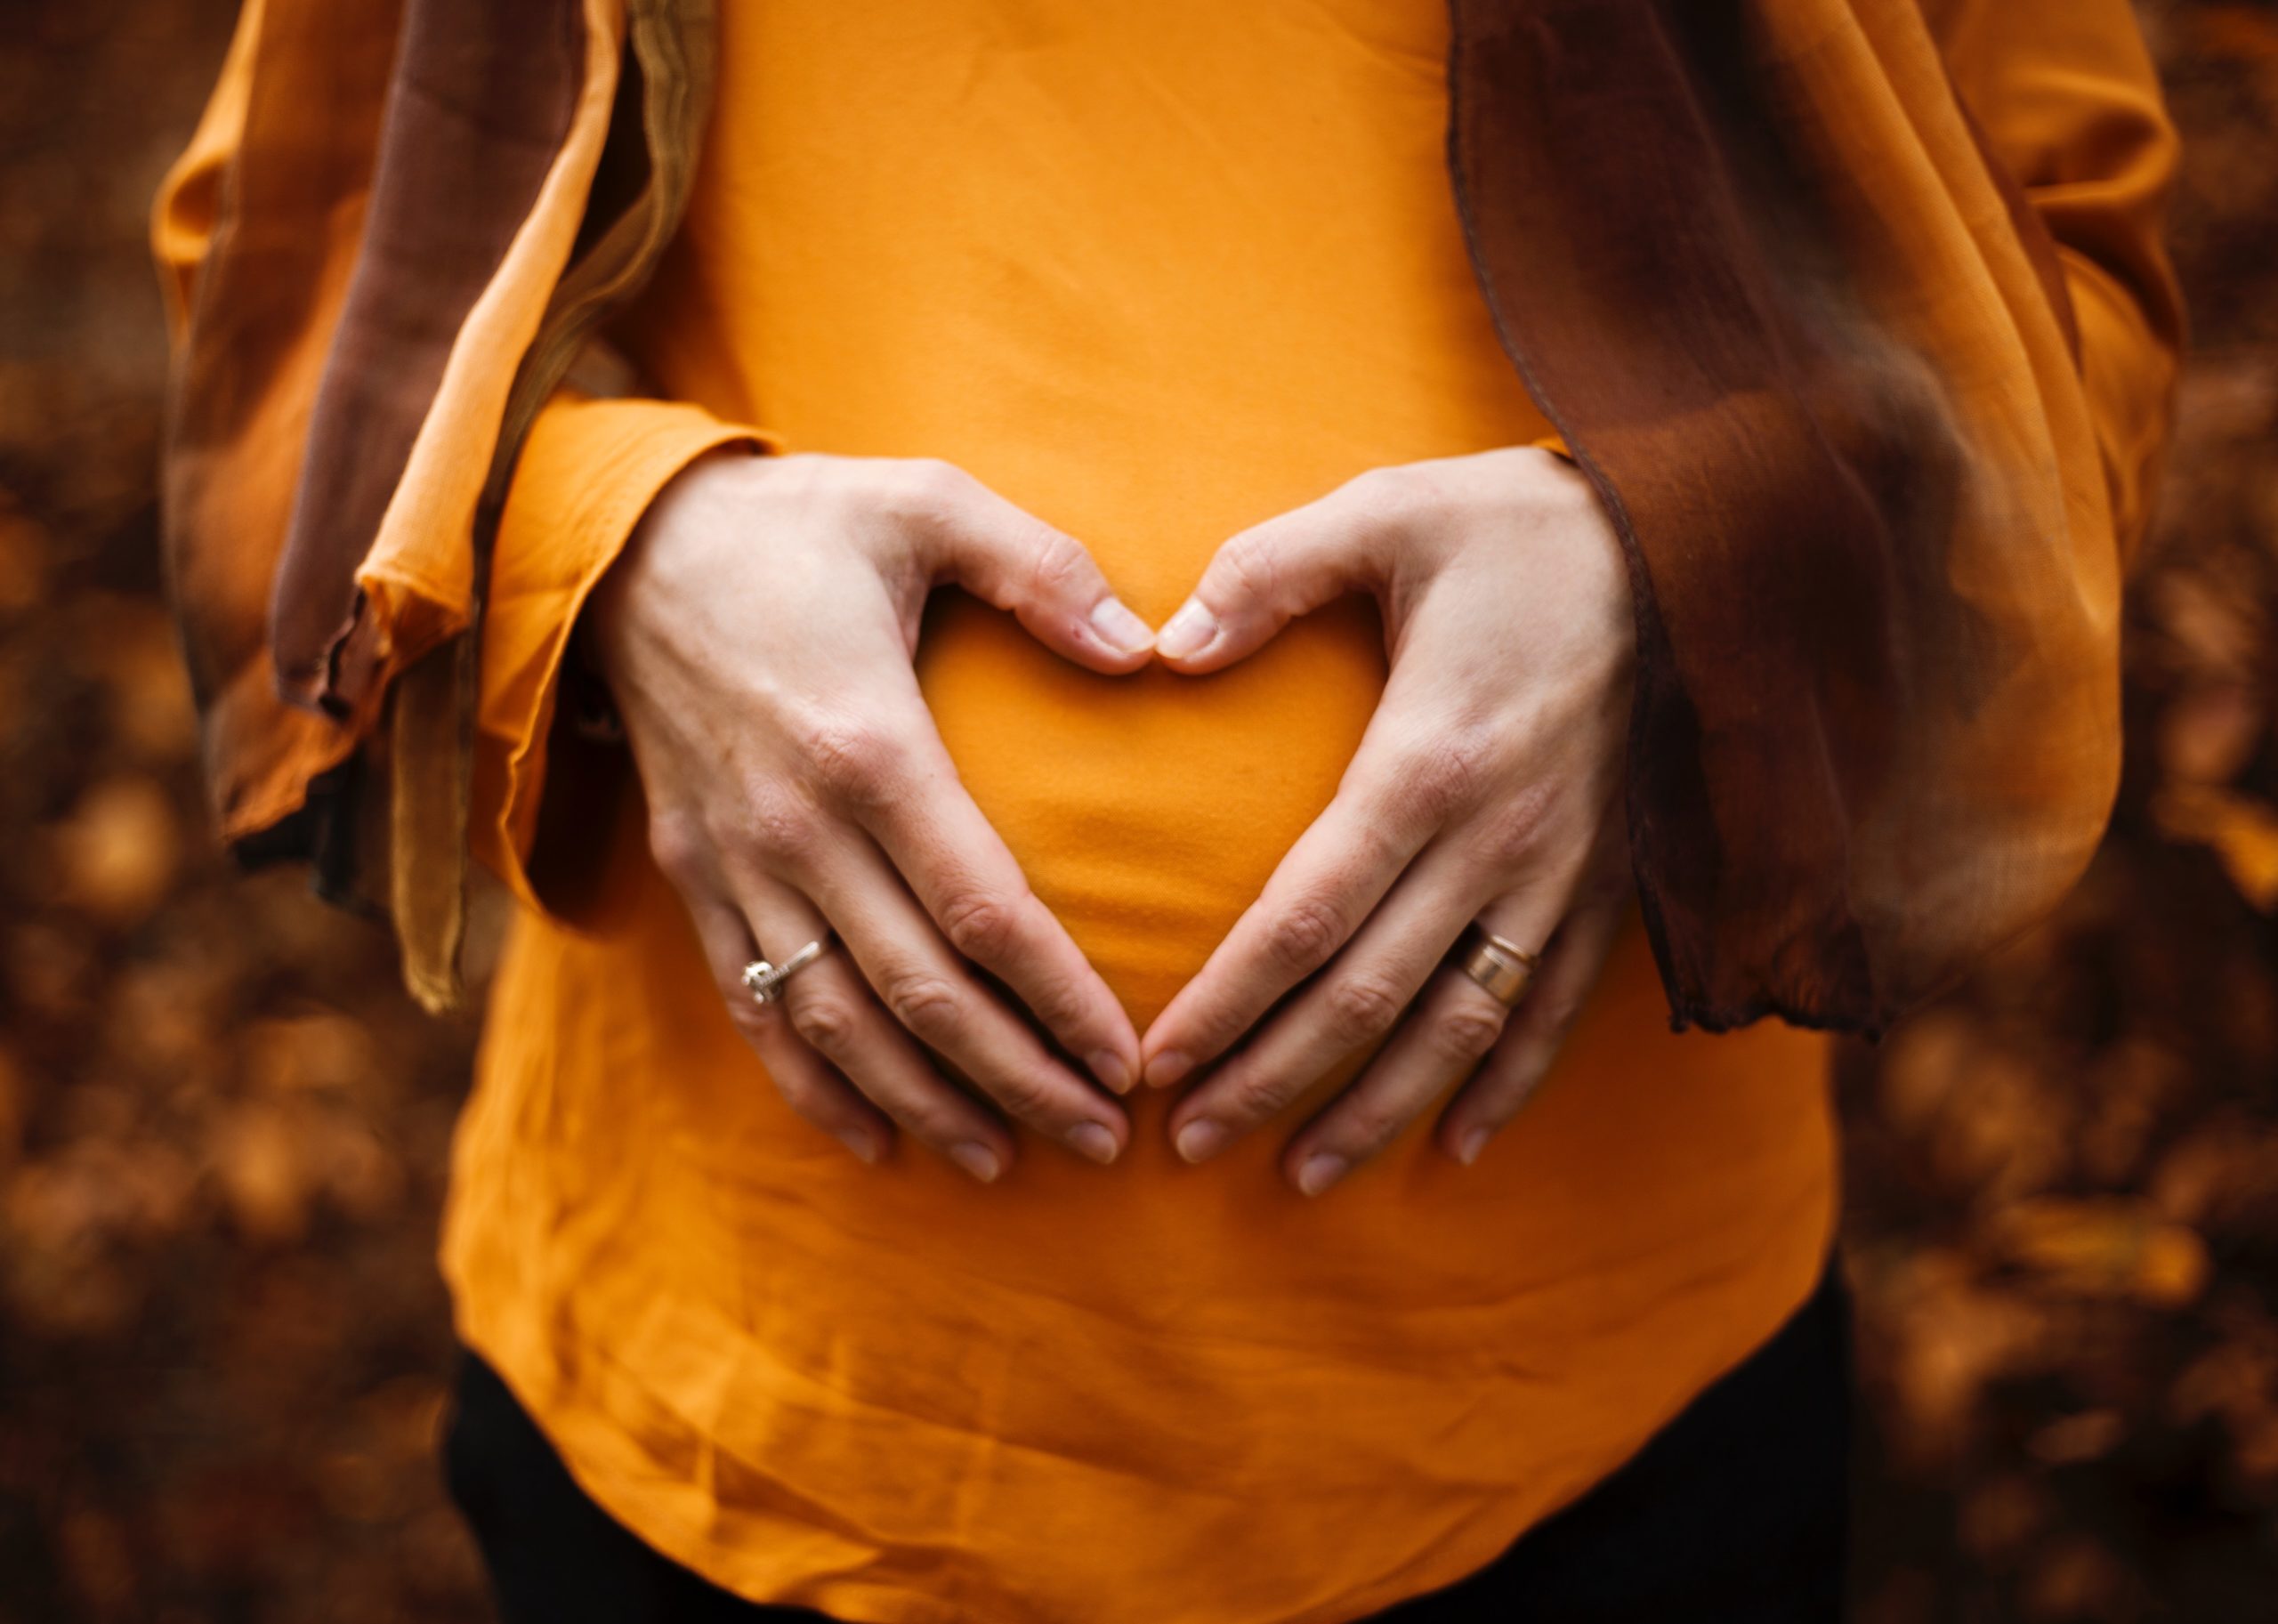 Hände auf dem Bauch einer werdenden Mutter, die ein Herz formen.